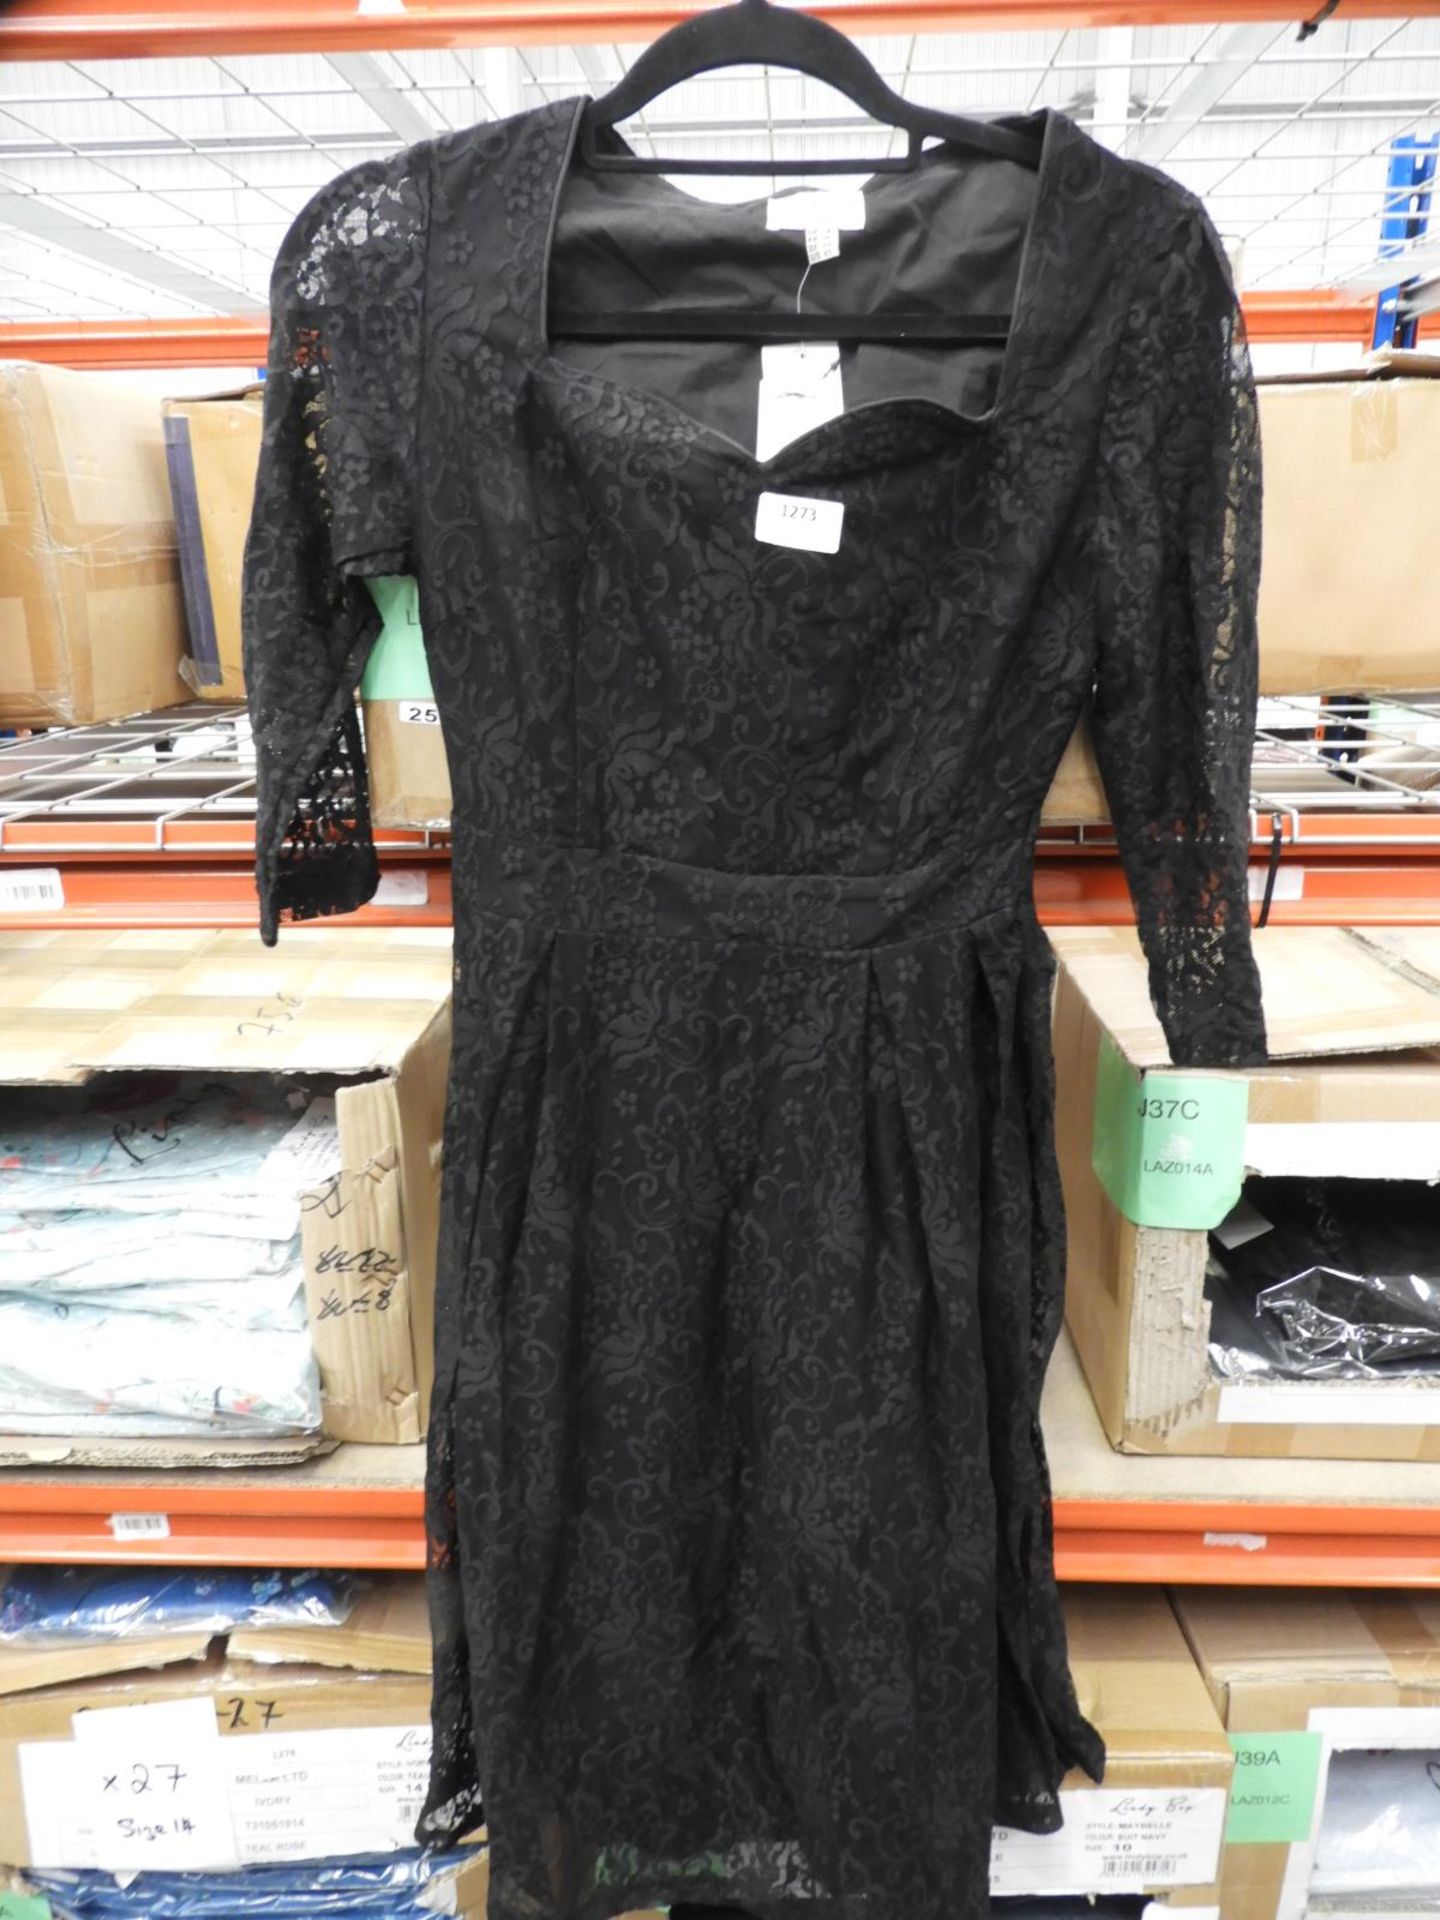 *11 Size: 8 Lisette Black Dresses